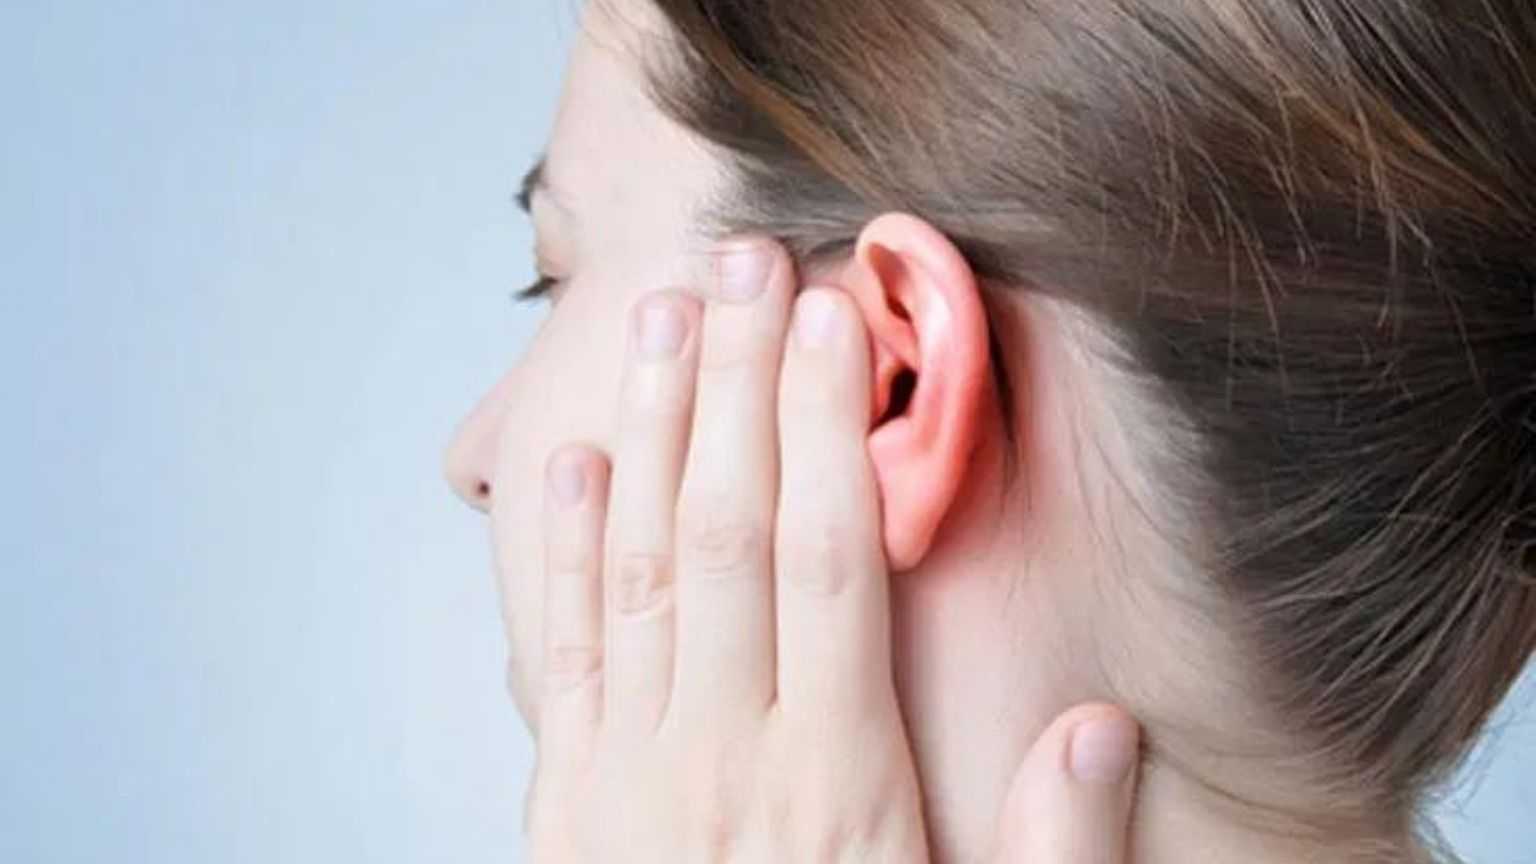 بند کان کو کھولنے کے قدرتی طریقے